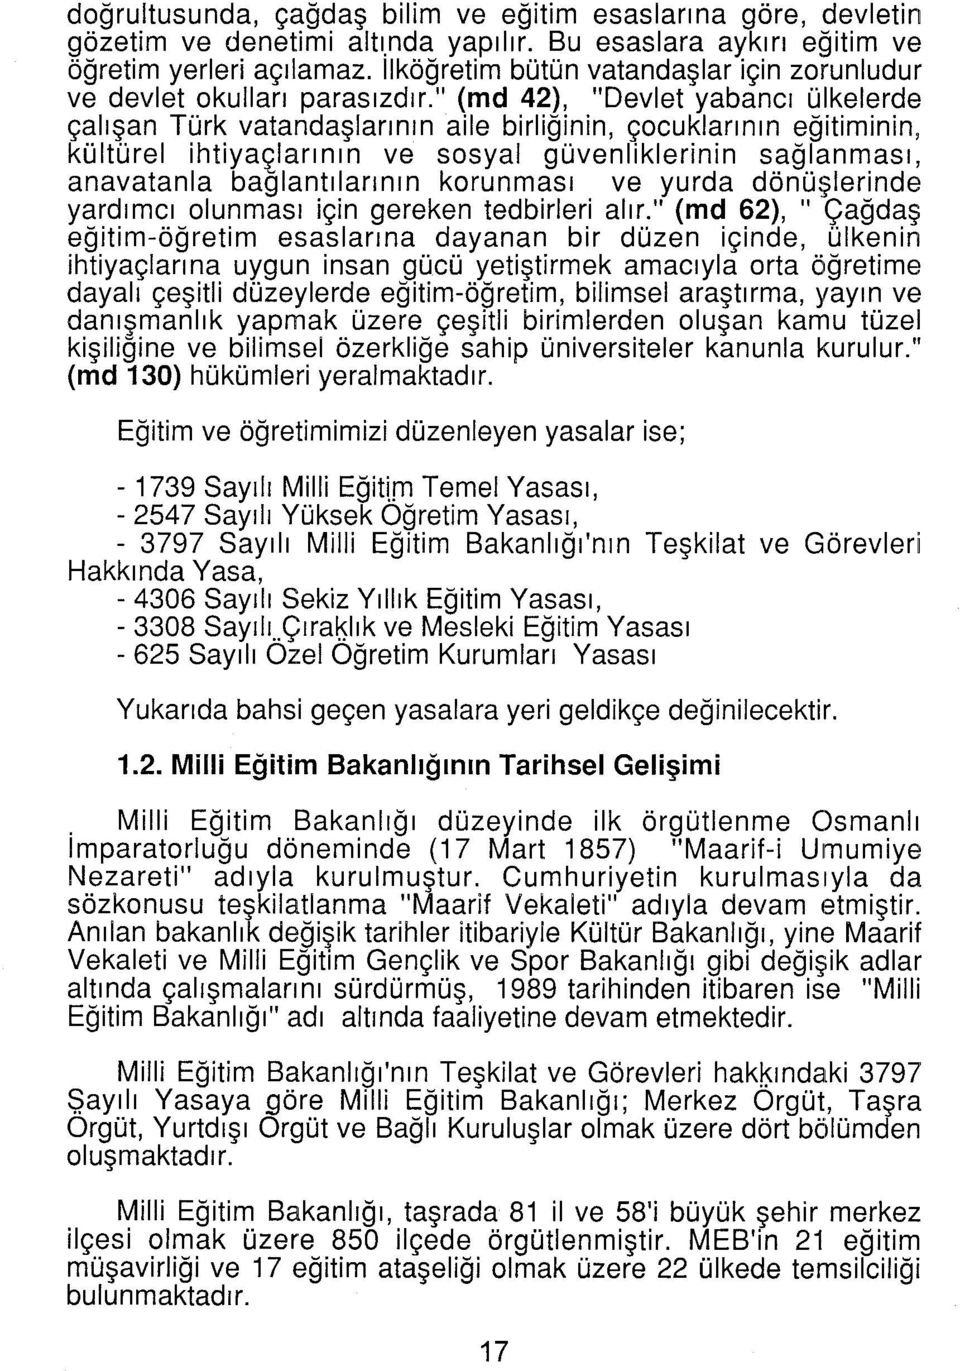 " (md 42), "Devlet yabancı ülkelerde çalışan Türk vatandaşlarının aile birliğinin, çocuklarının eğitiminin, kültürel ihtiyaçlarının ve sosyal güvenliklerinin sağlanması, anavatanla bağlantılarının